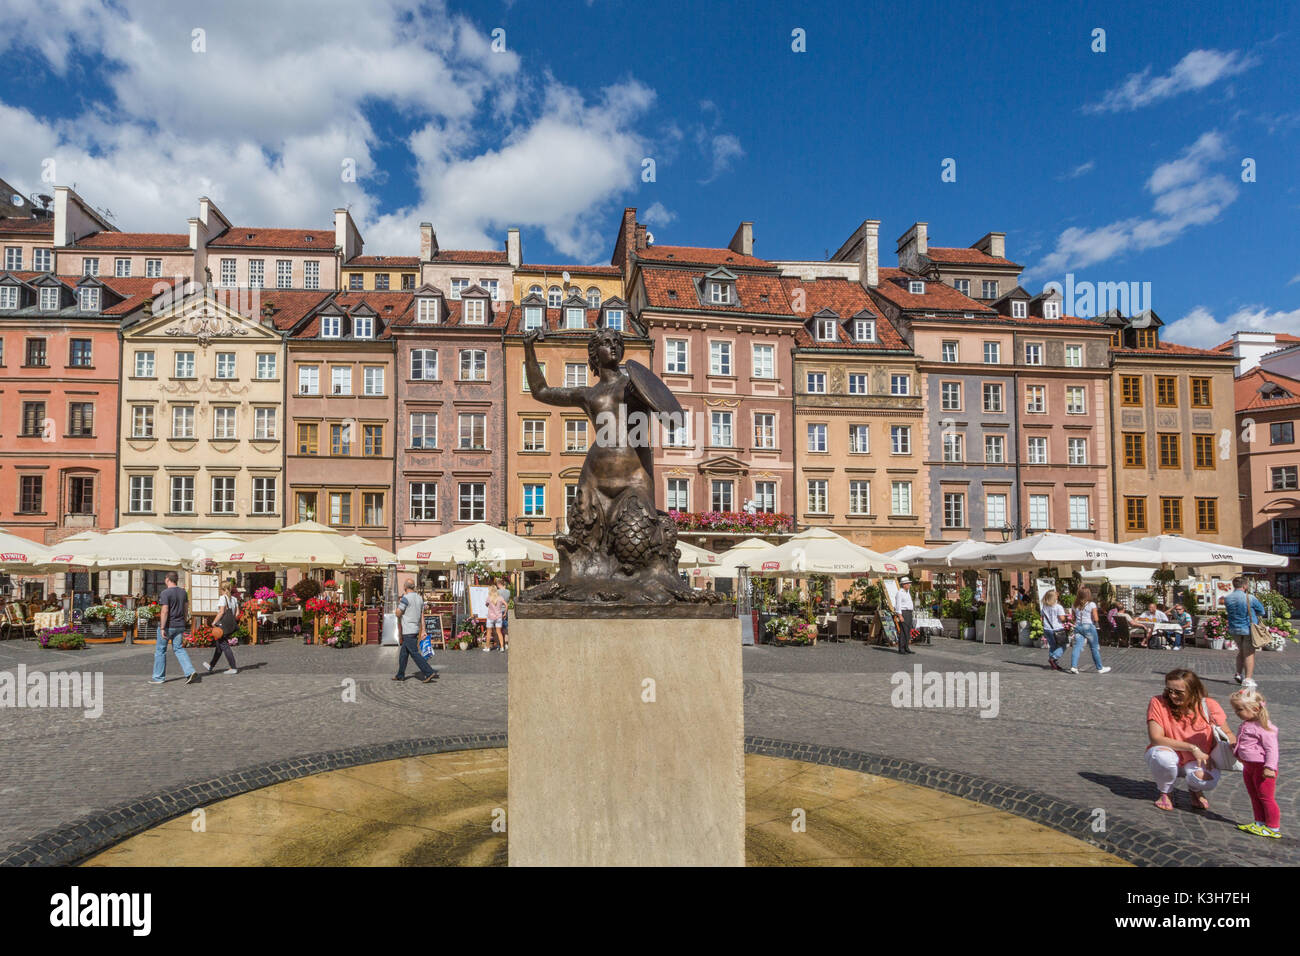 Polonia, Warzaw ciudad, Plaza de la Ciudad Vieja, la estatua de la sirena Foto de stock